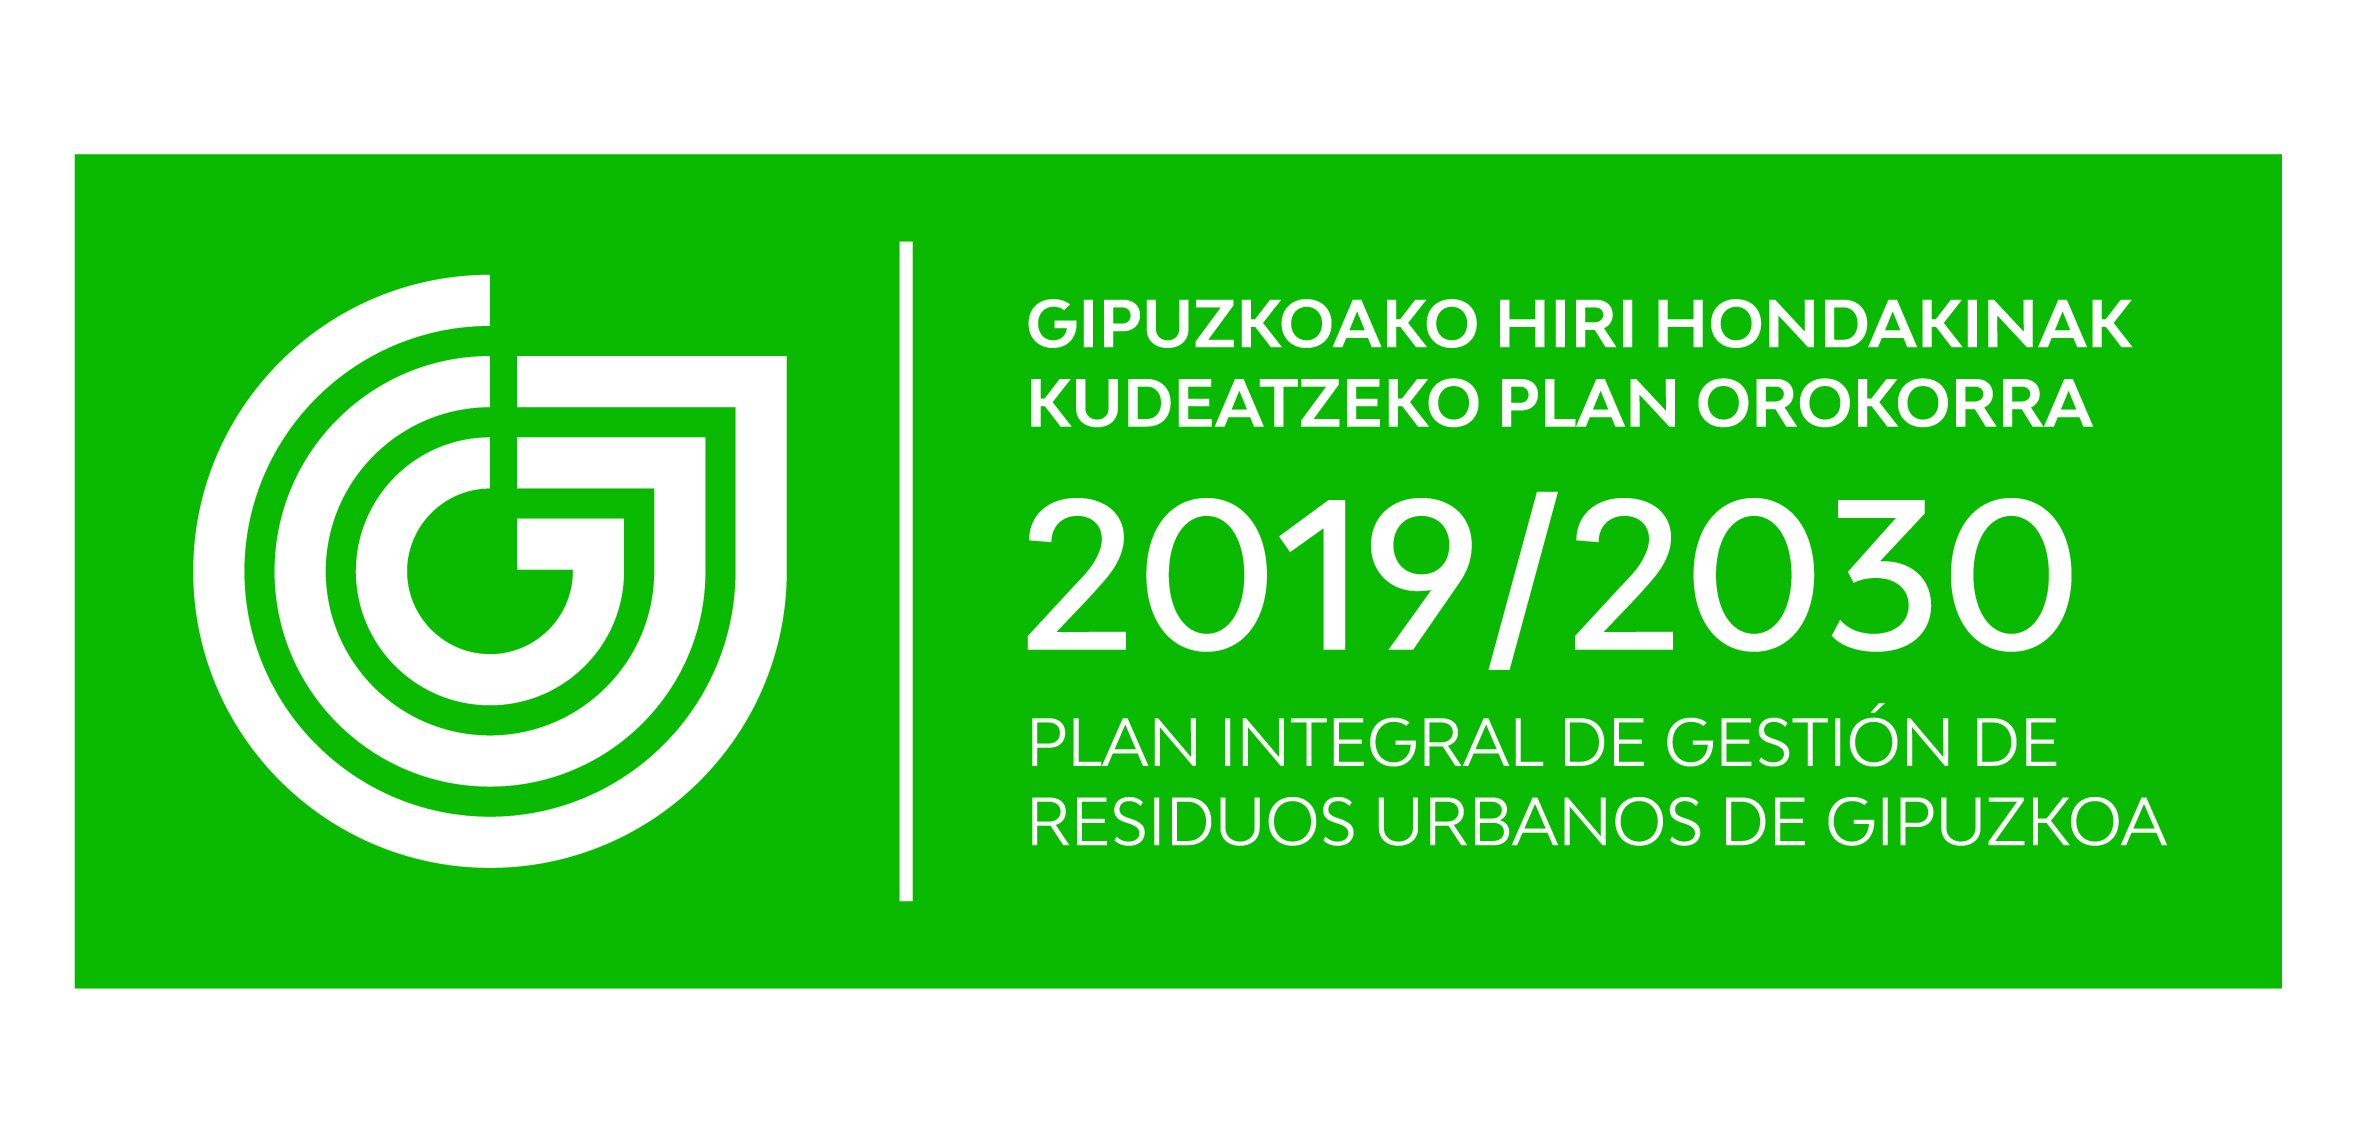 Publicada la Declaración Ambiental Estratégica del Plan Integral de Gestión de Residuos Urbanos de Gipuzkoa 2019-2030.